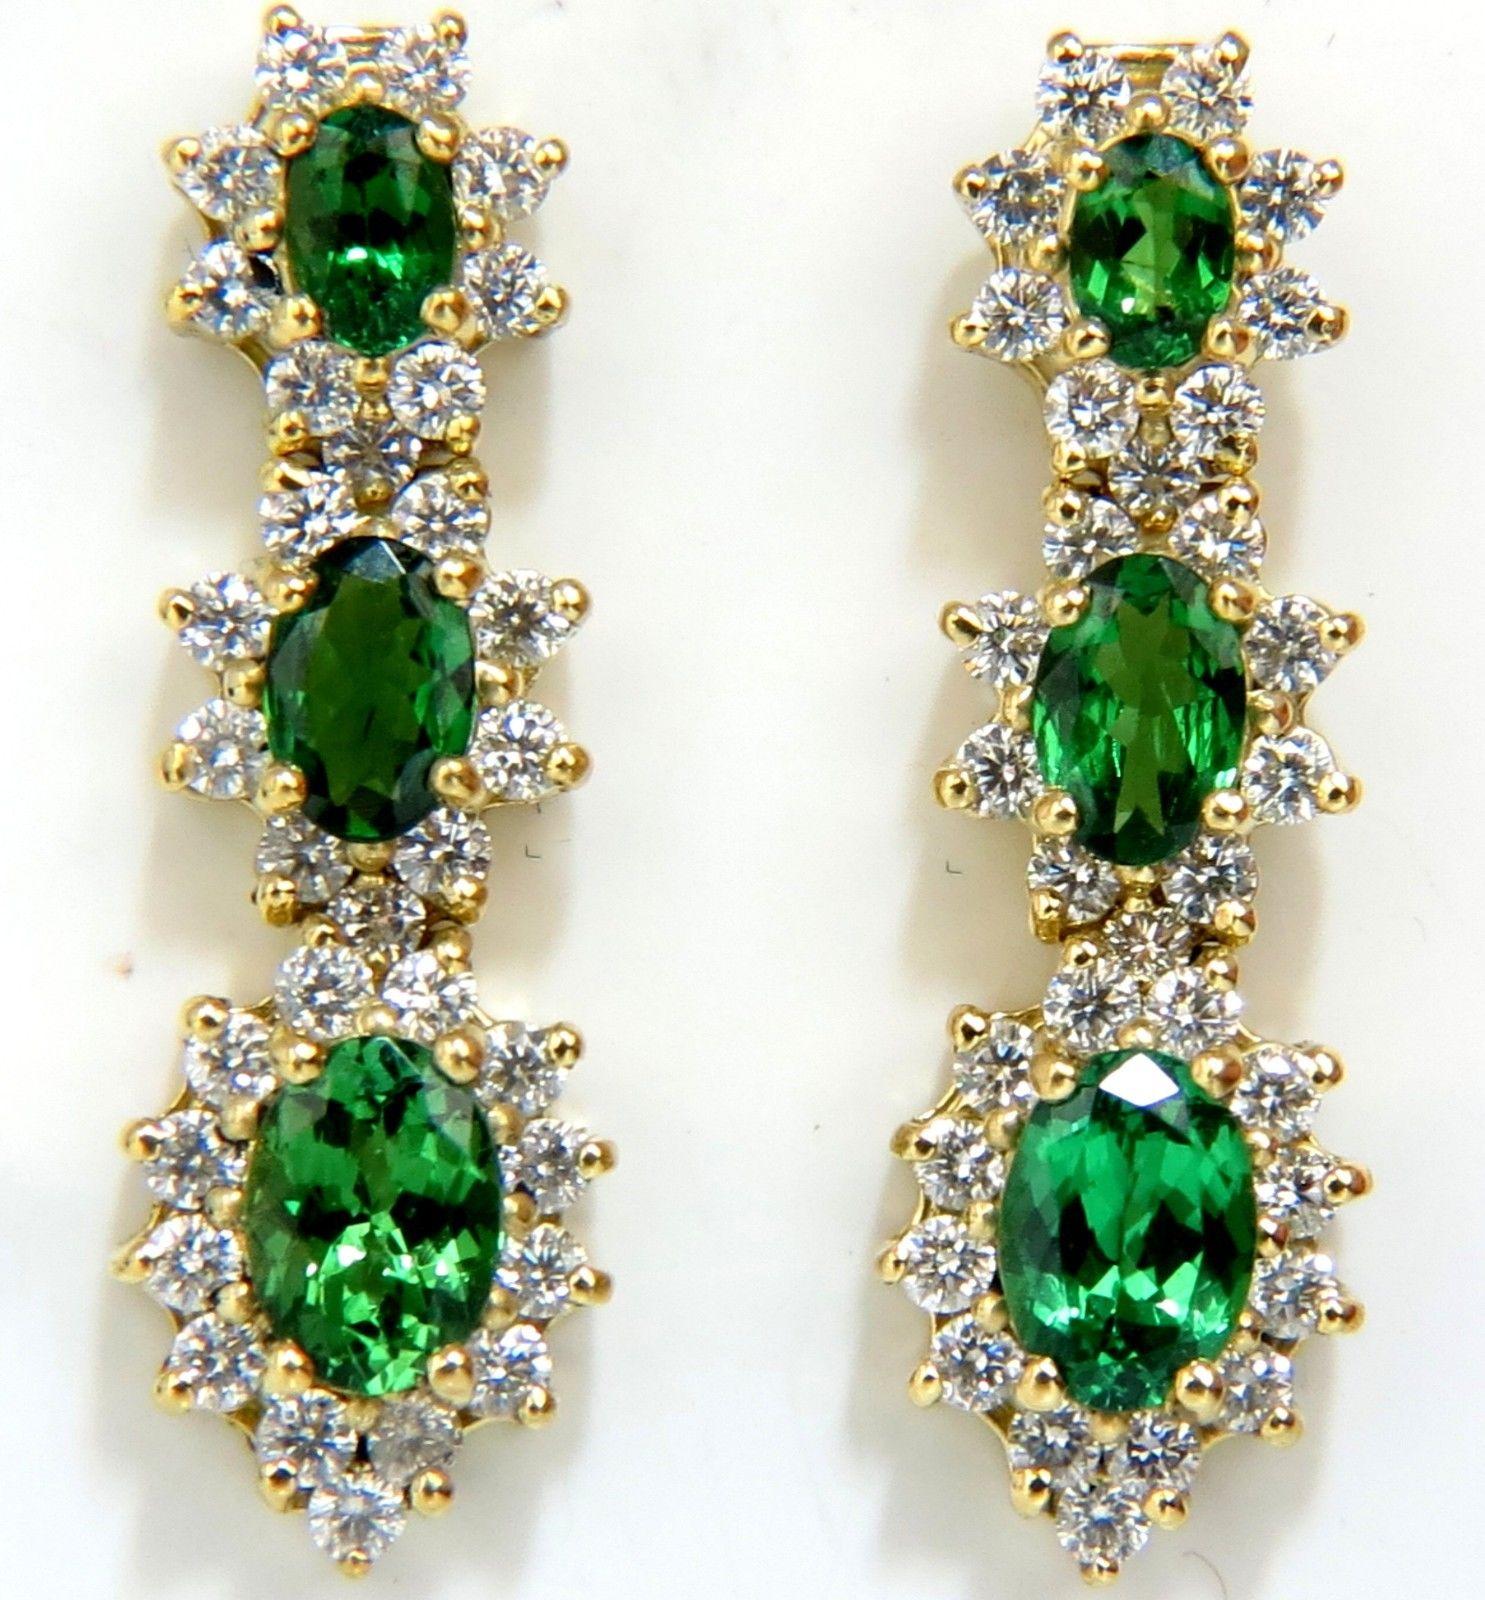 70.72 Carat Natural Tsavorites Diamond Bracelet Earrings Necklace Suite For Sale 3